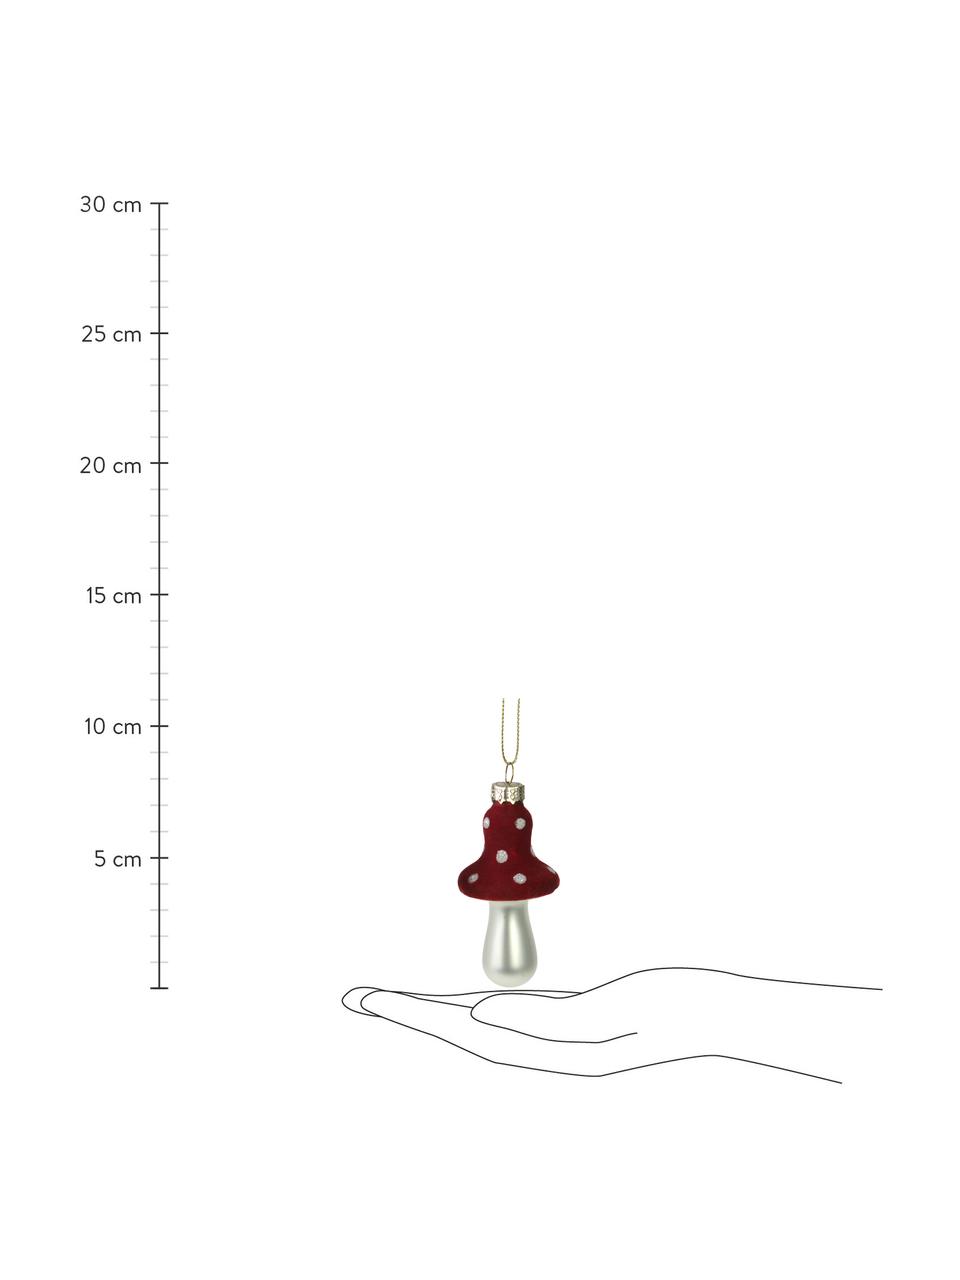 Décoration de sapin de Noël Mushrooms haut. 7 cm, 2 élém., Rouge, blanc perle, Lot de différentes tailles